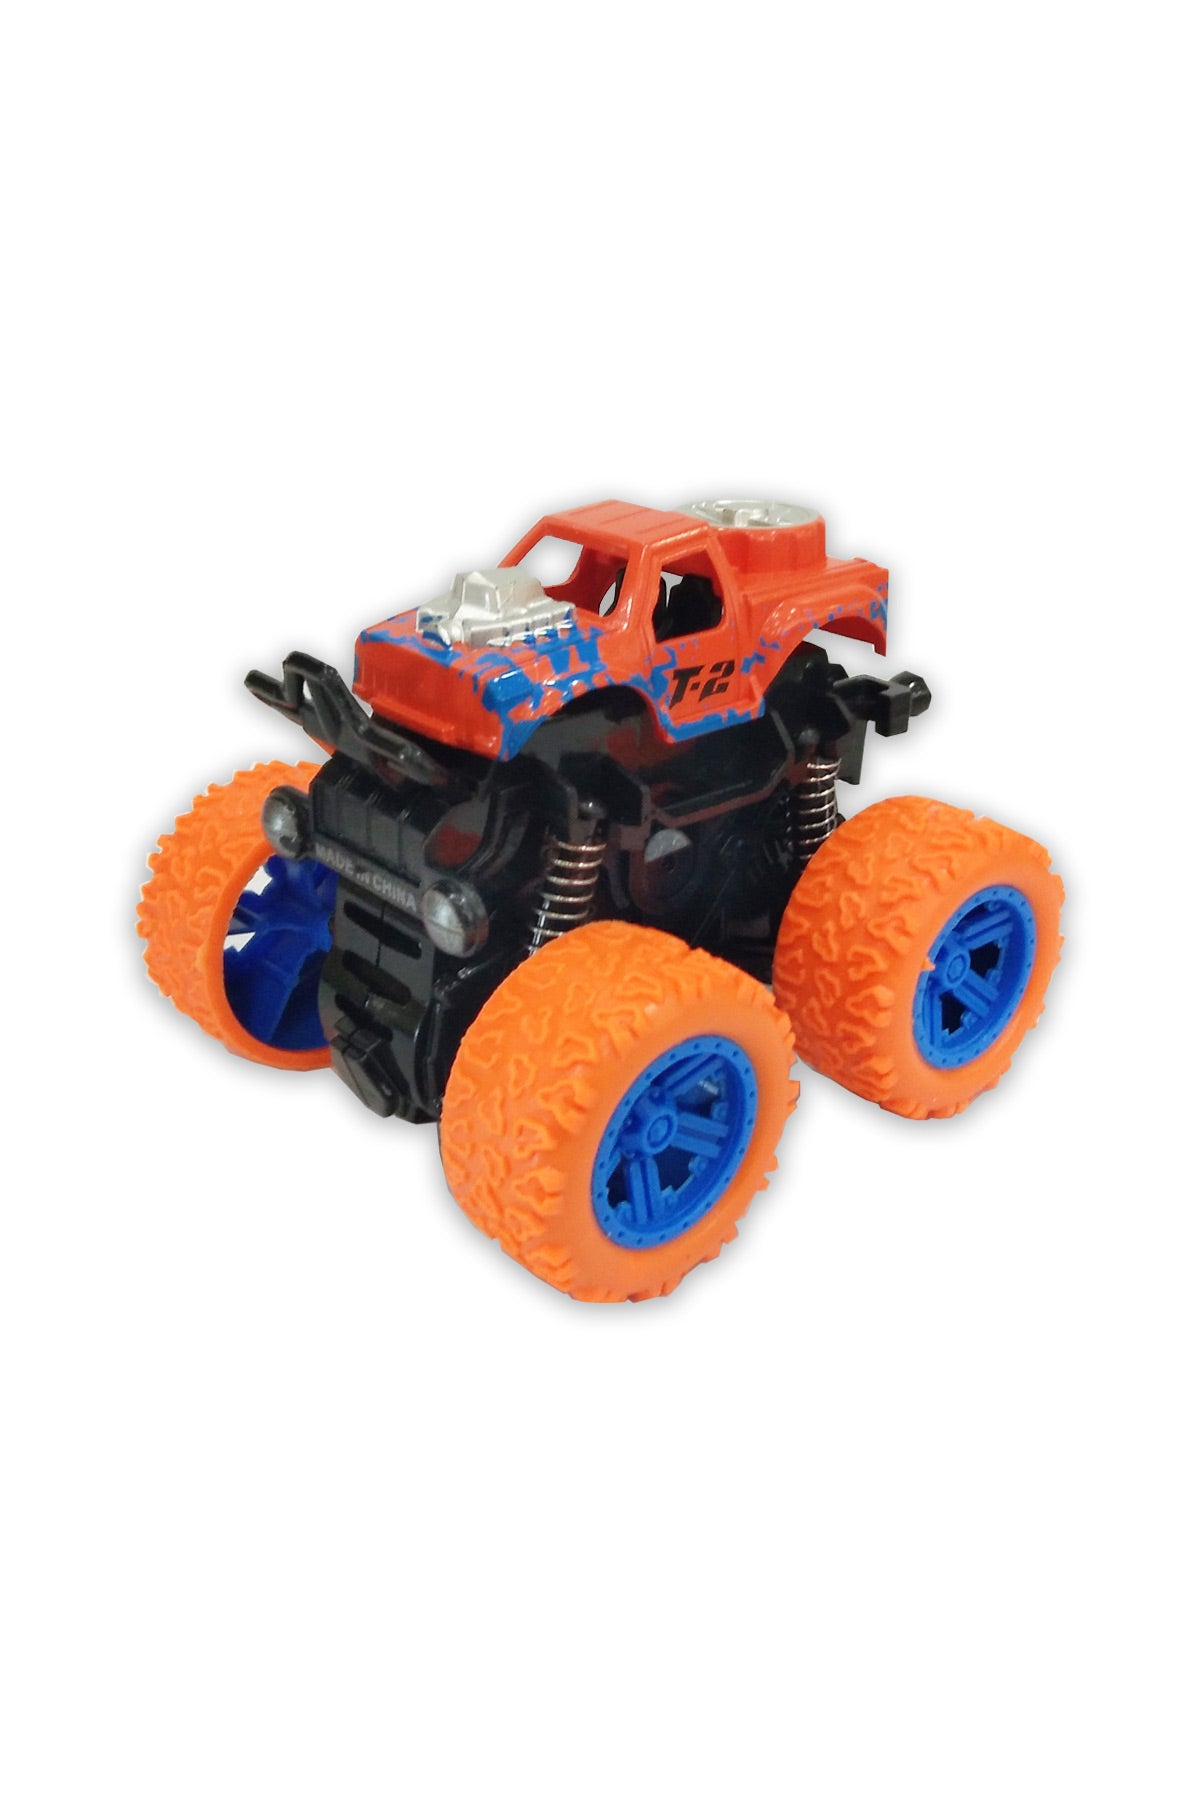 Toy Plastic Car